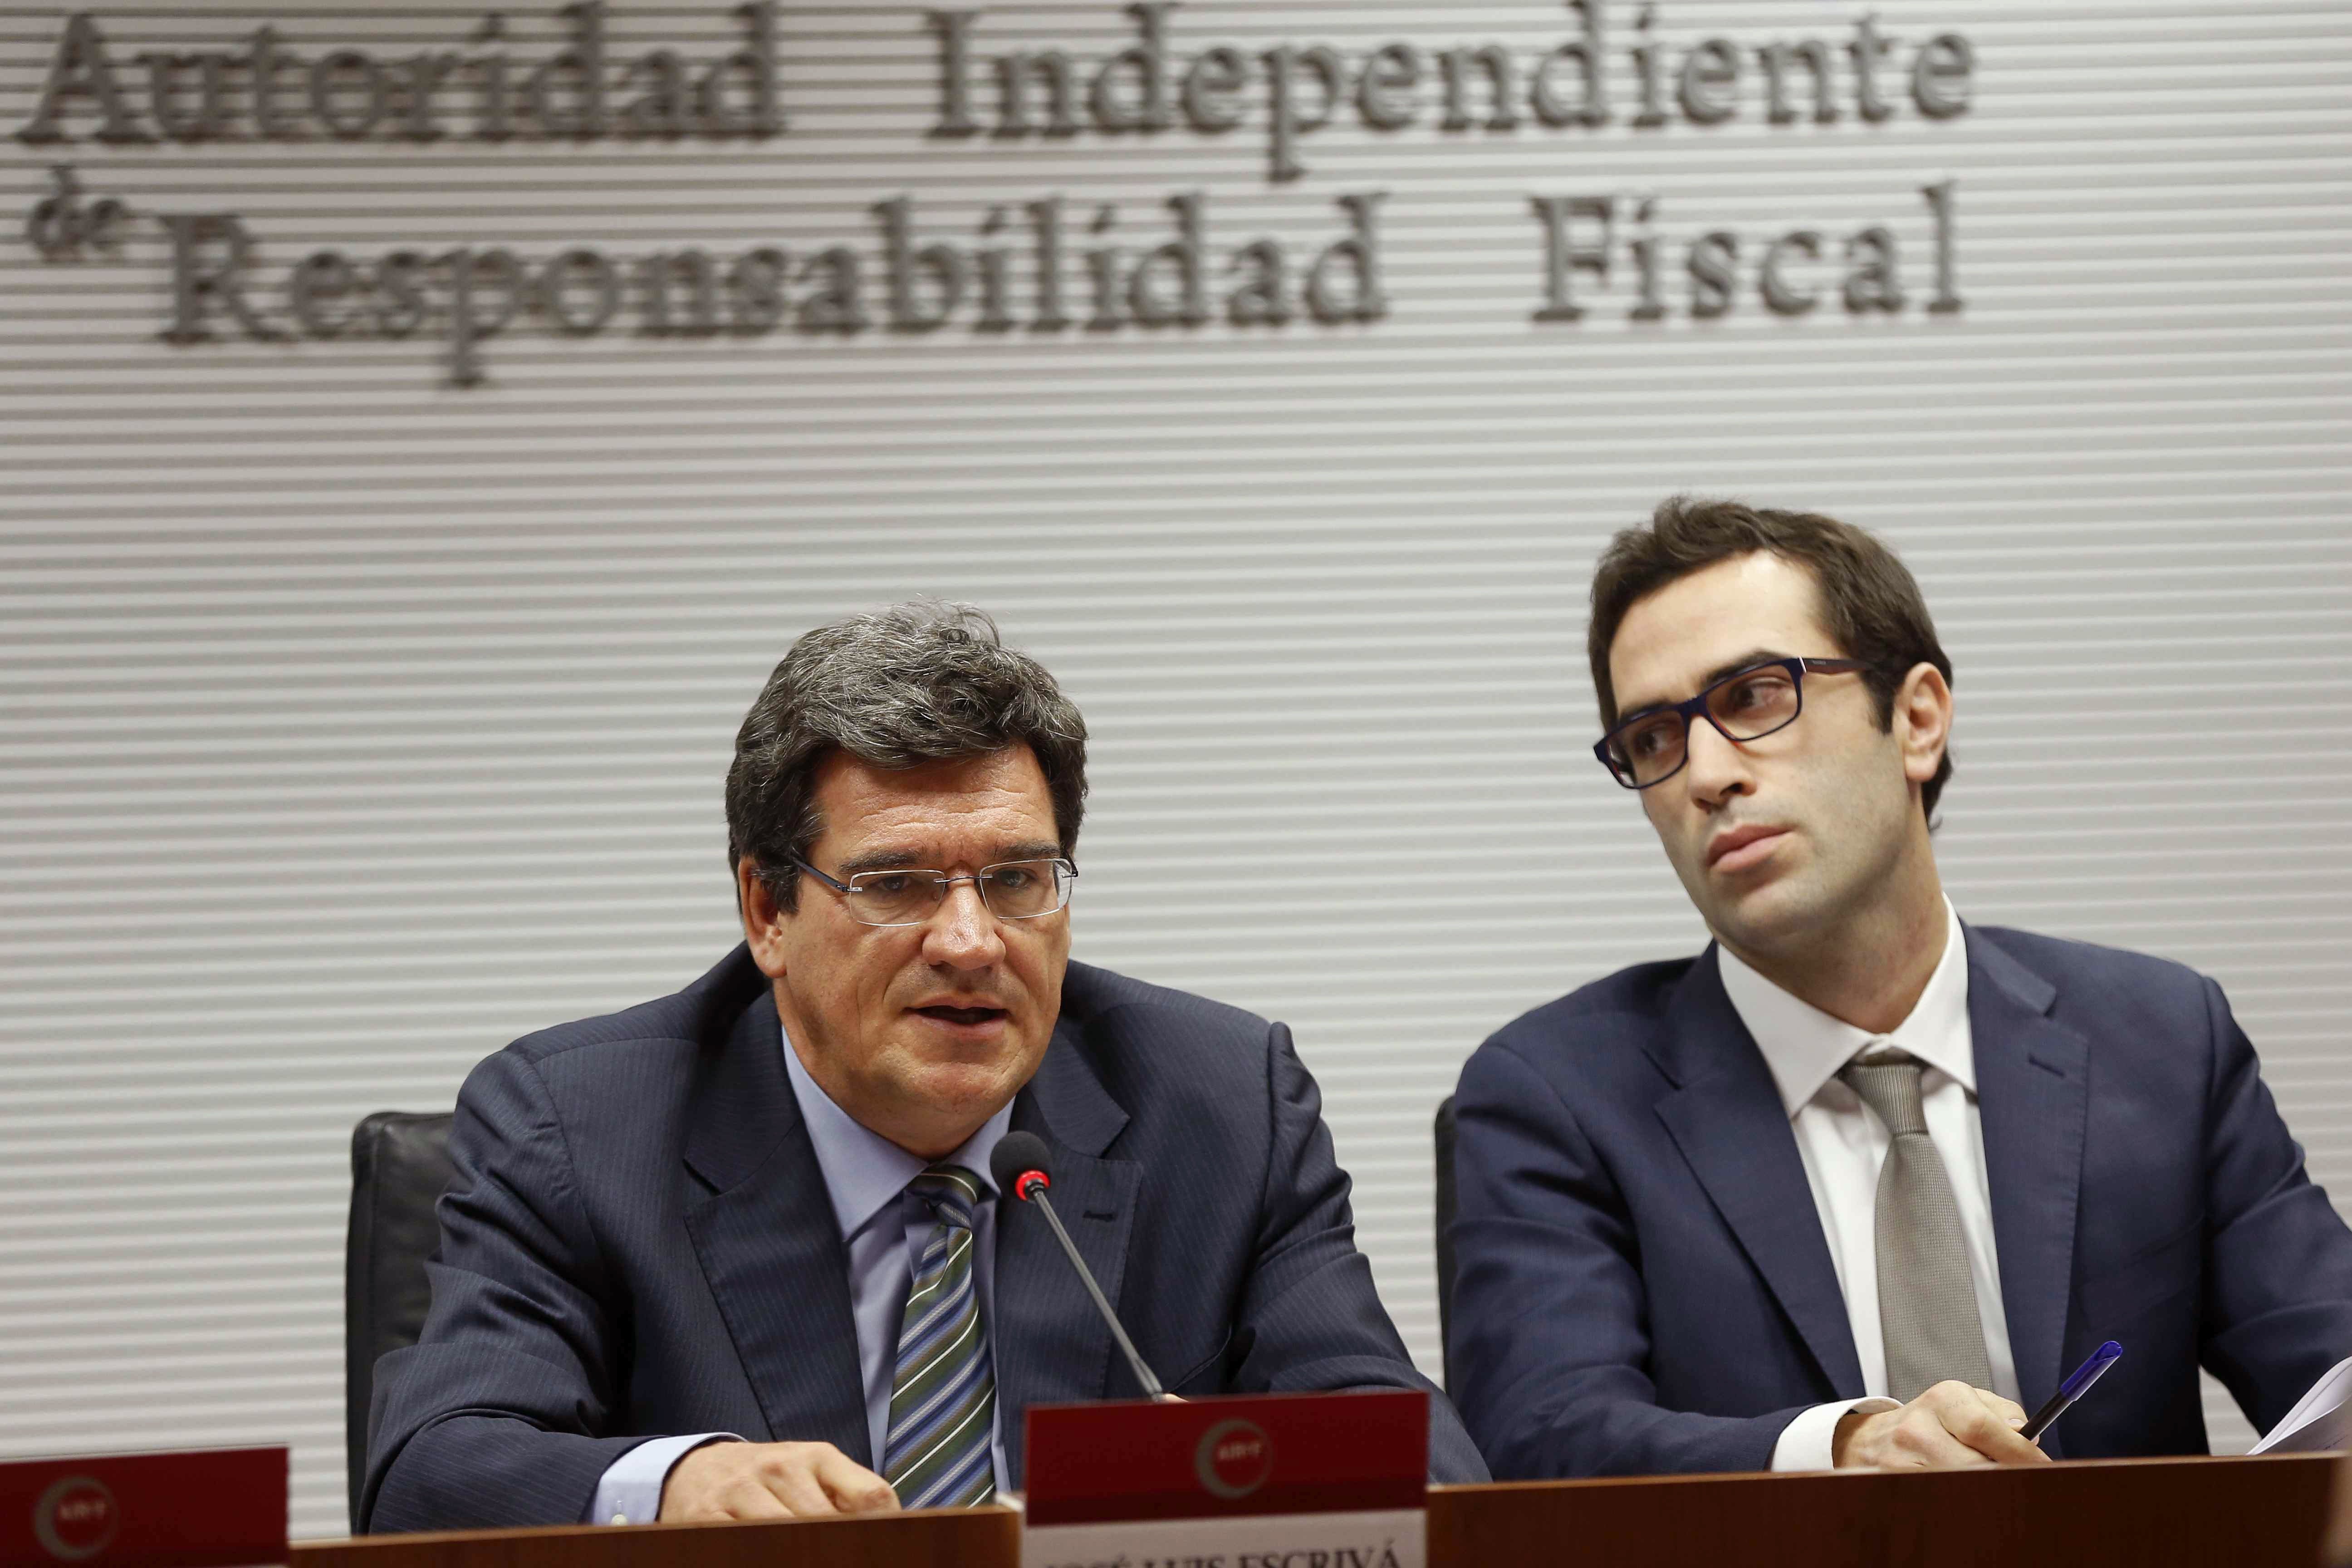 La AIReF calcula en 1.700 milions les pèrdues de les autonomies per la crisi catalana